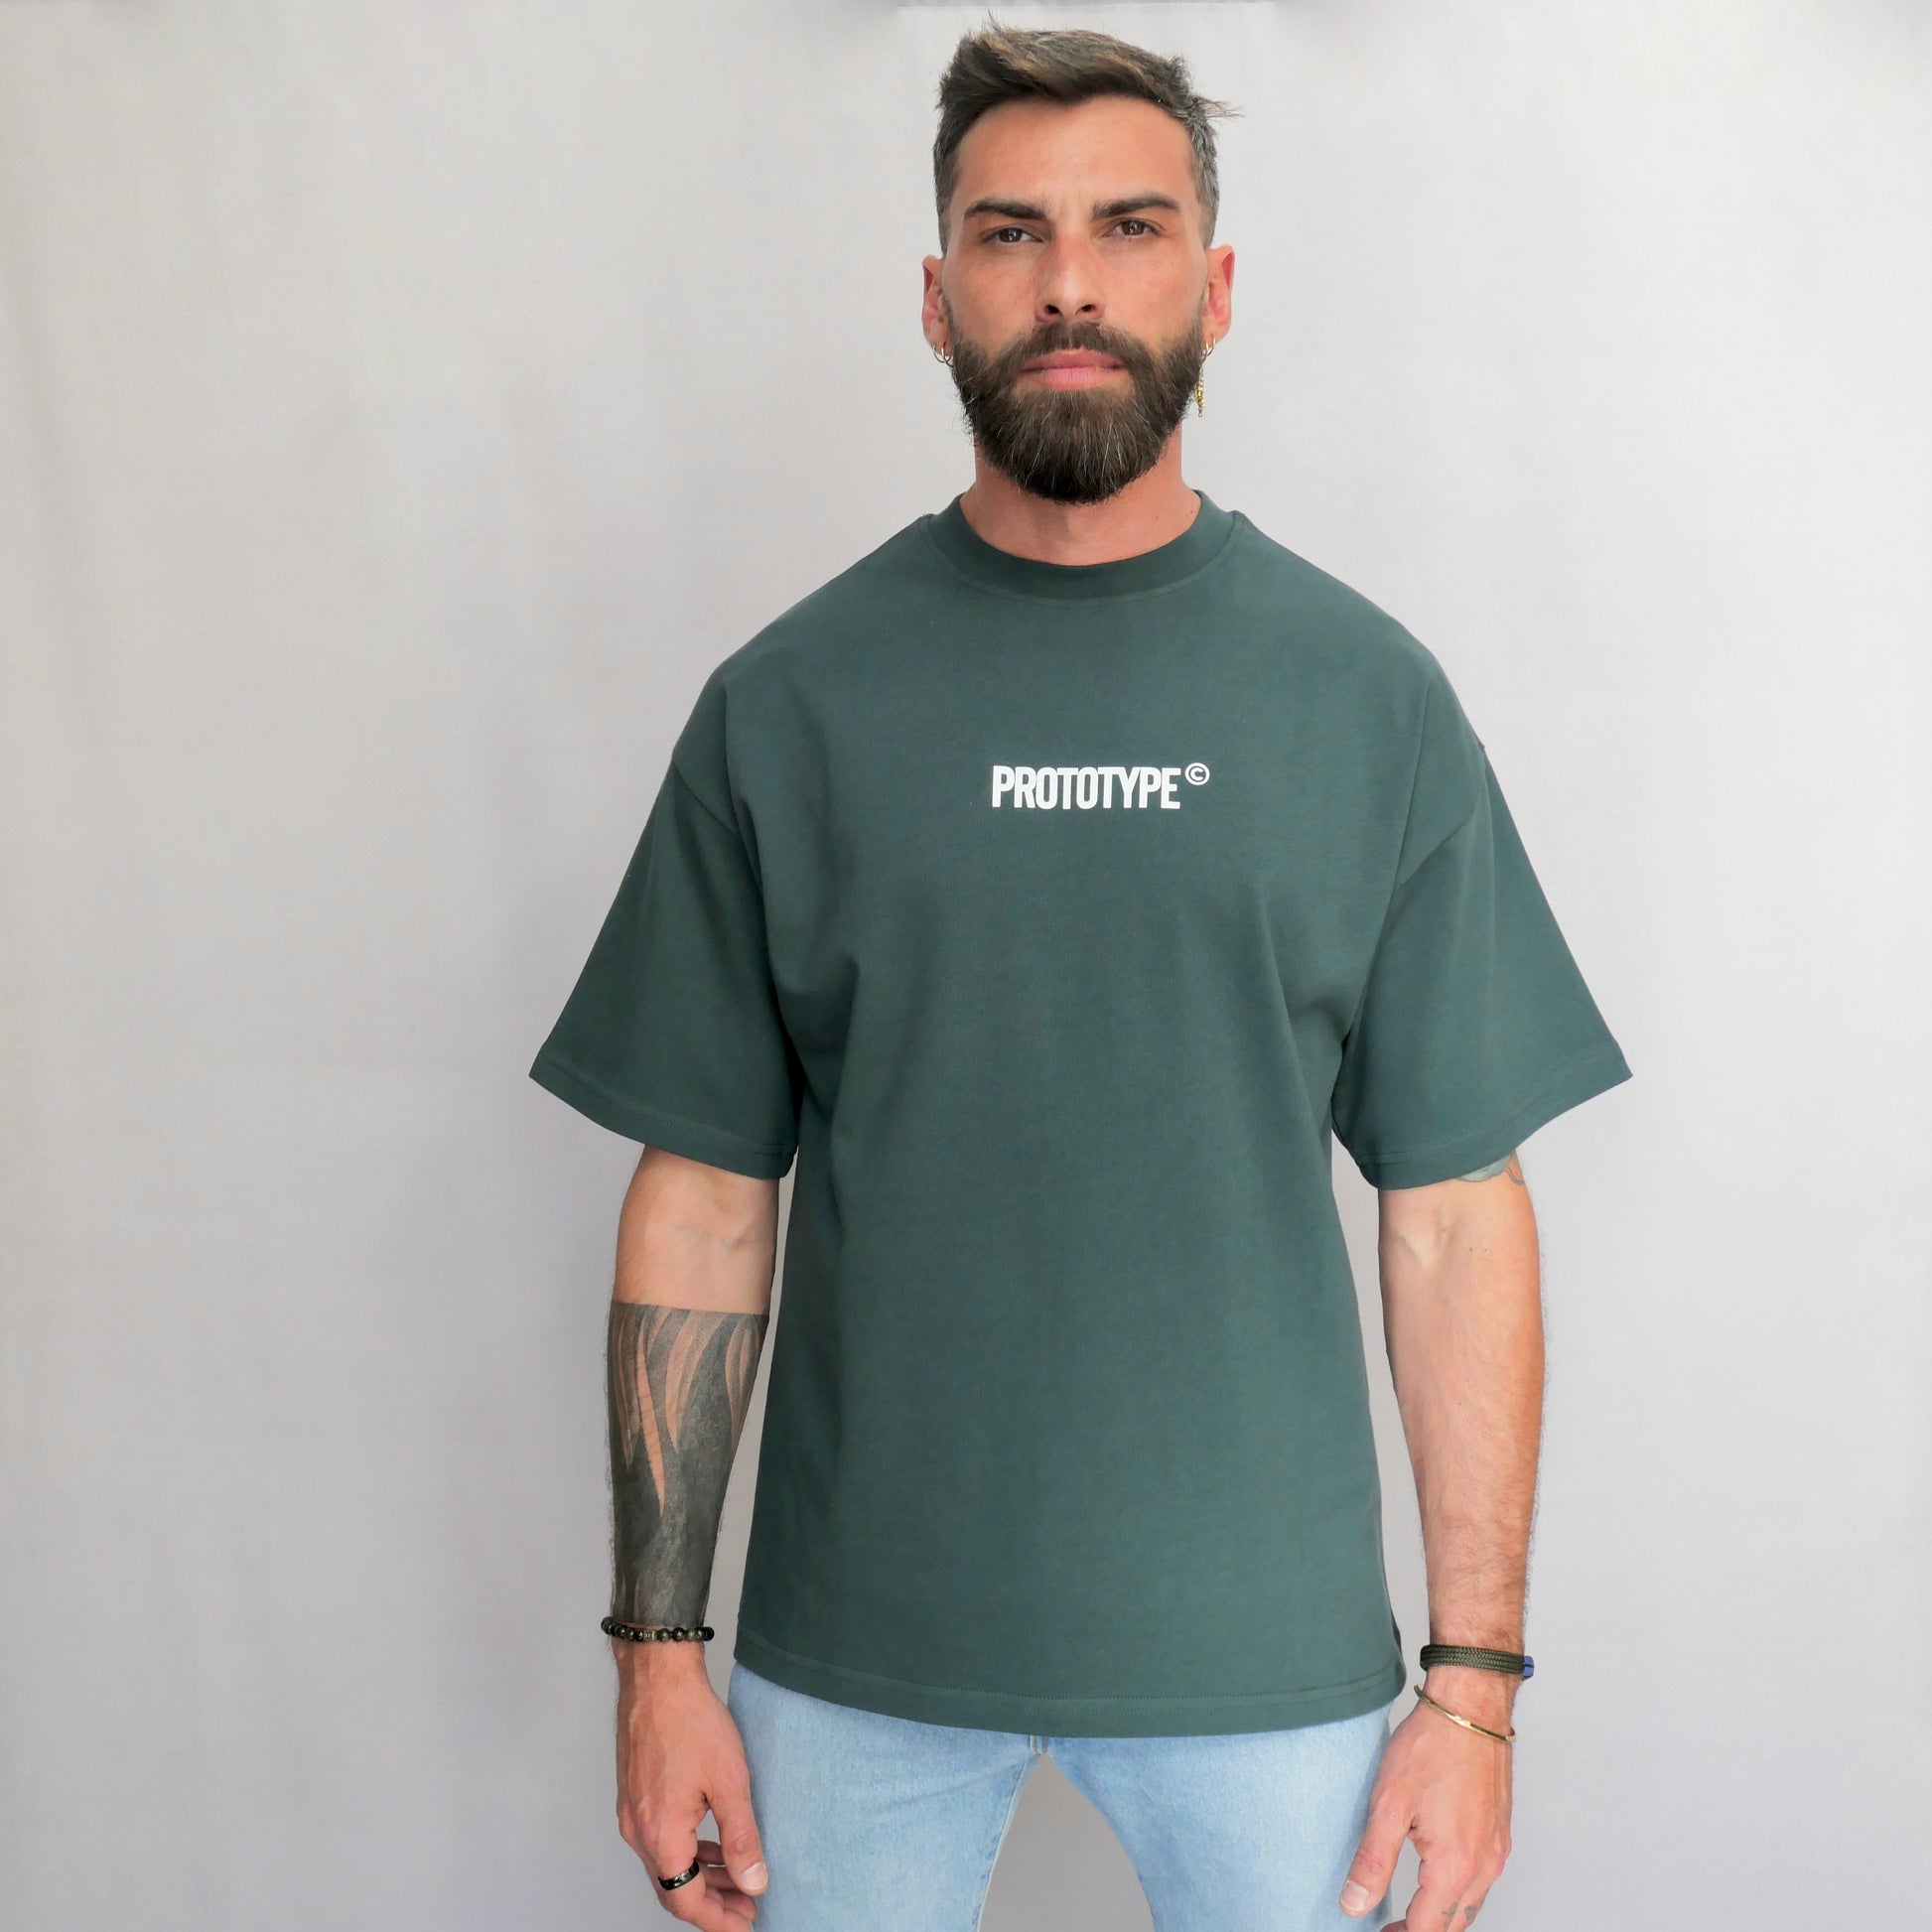 monsieurbarr t-shirt oversize couleur vert sauvage logo prototype fabriqué au Portugal